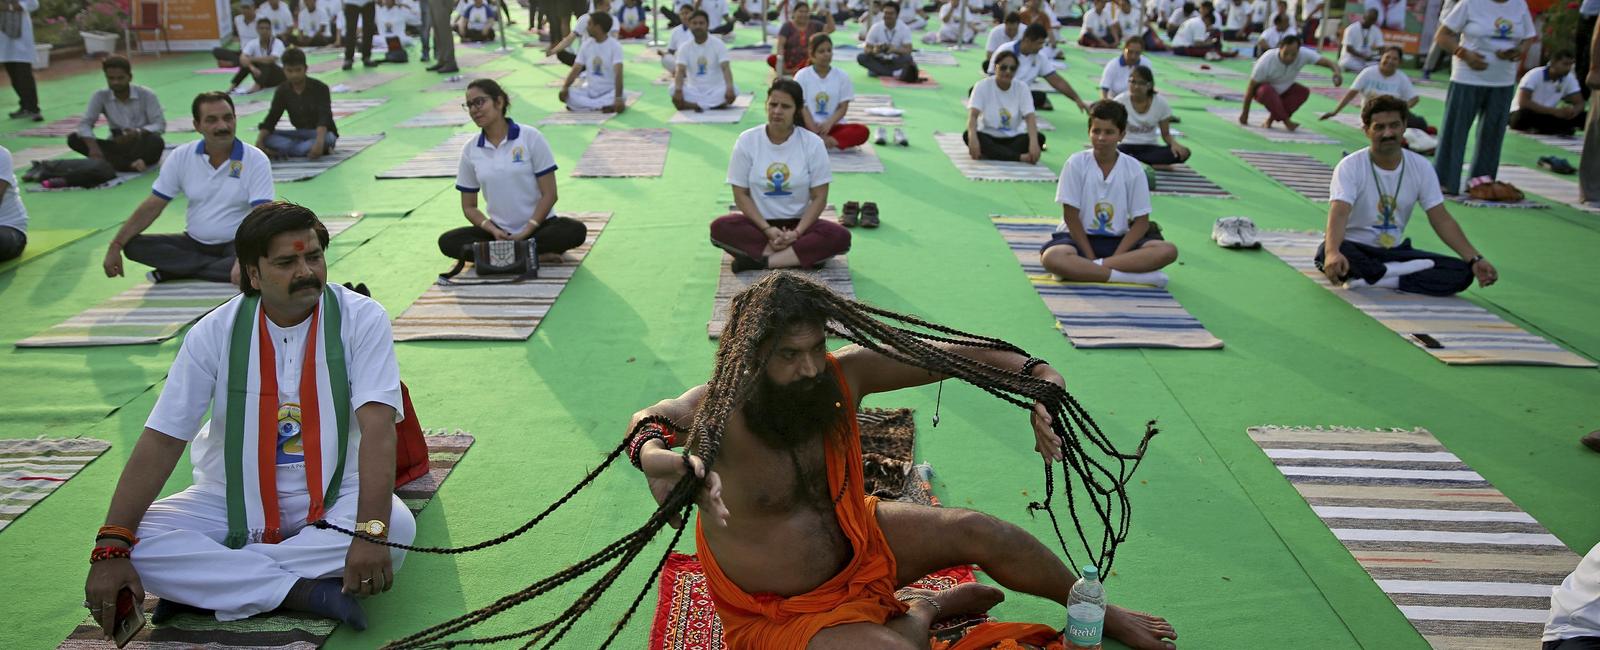 Where did yoga originate india